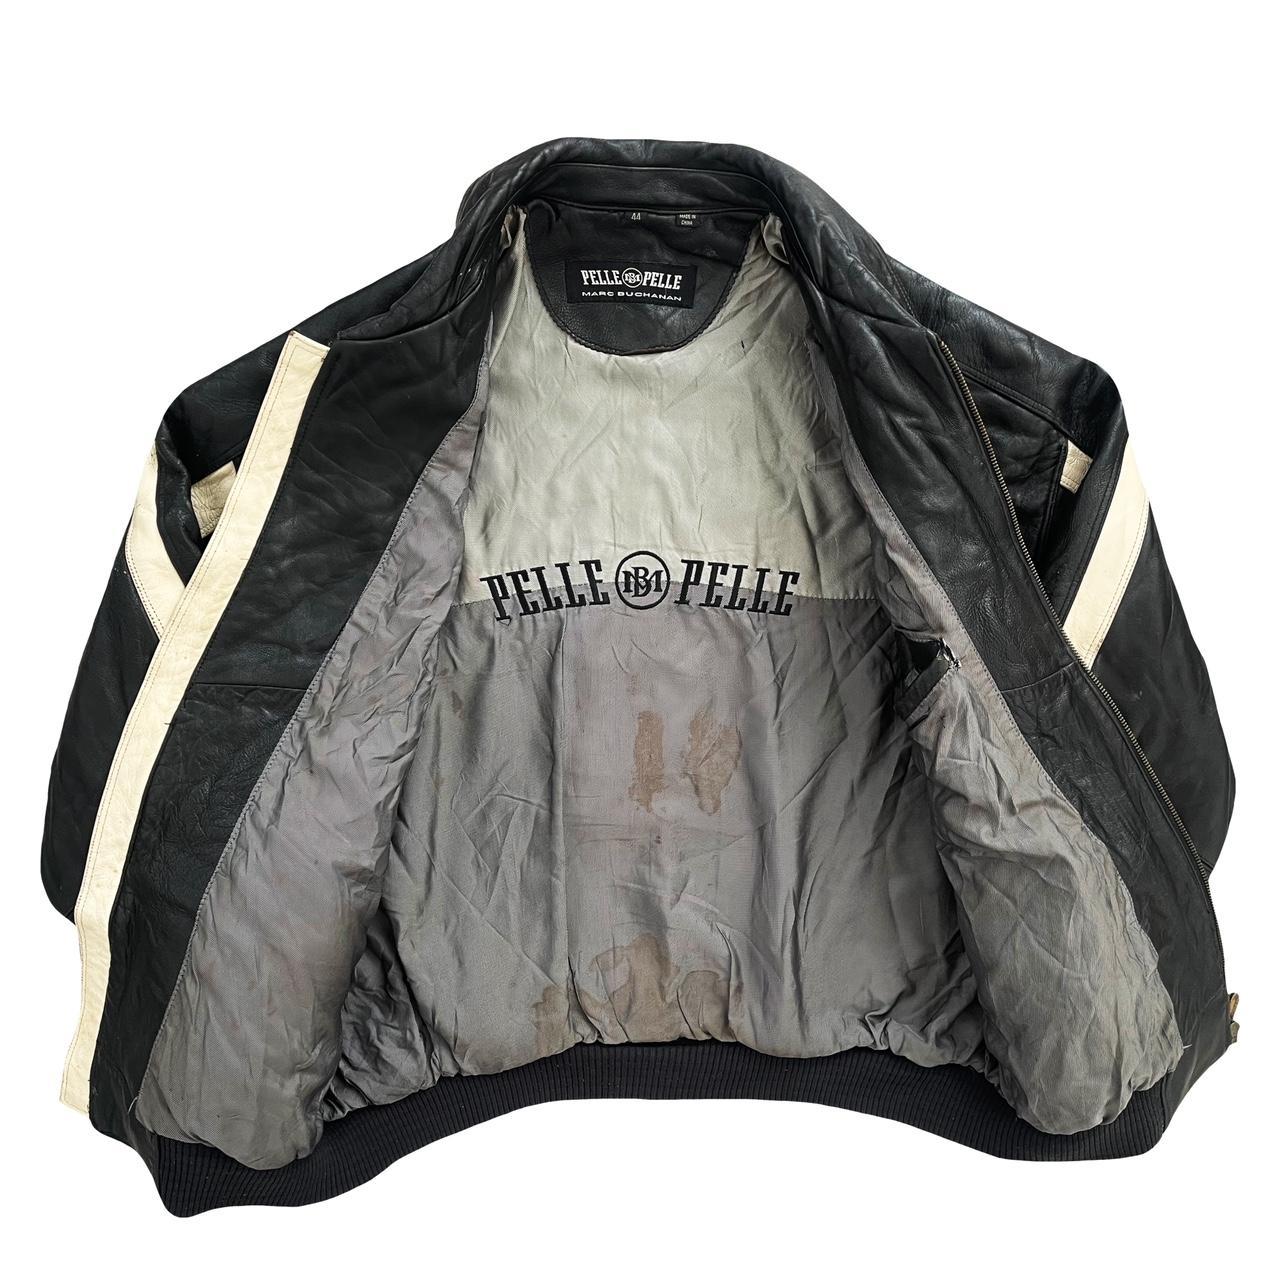 Pelle Pelle Supreme Leather Jacket